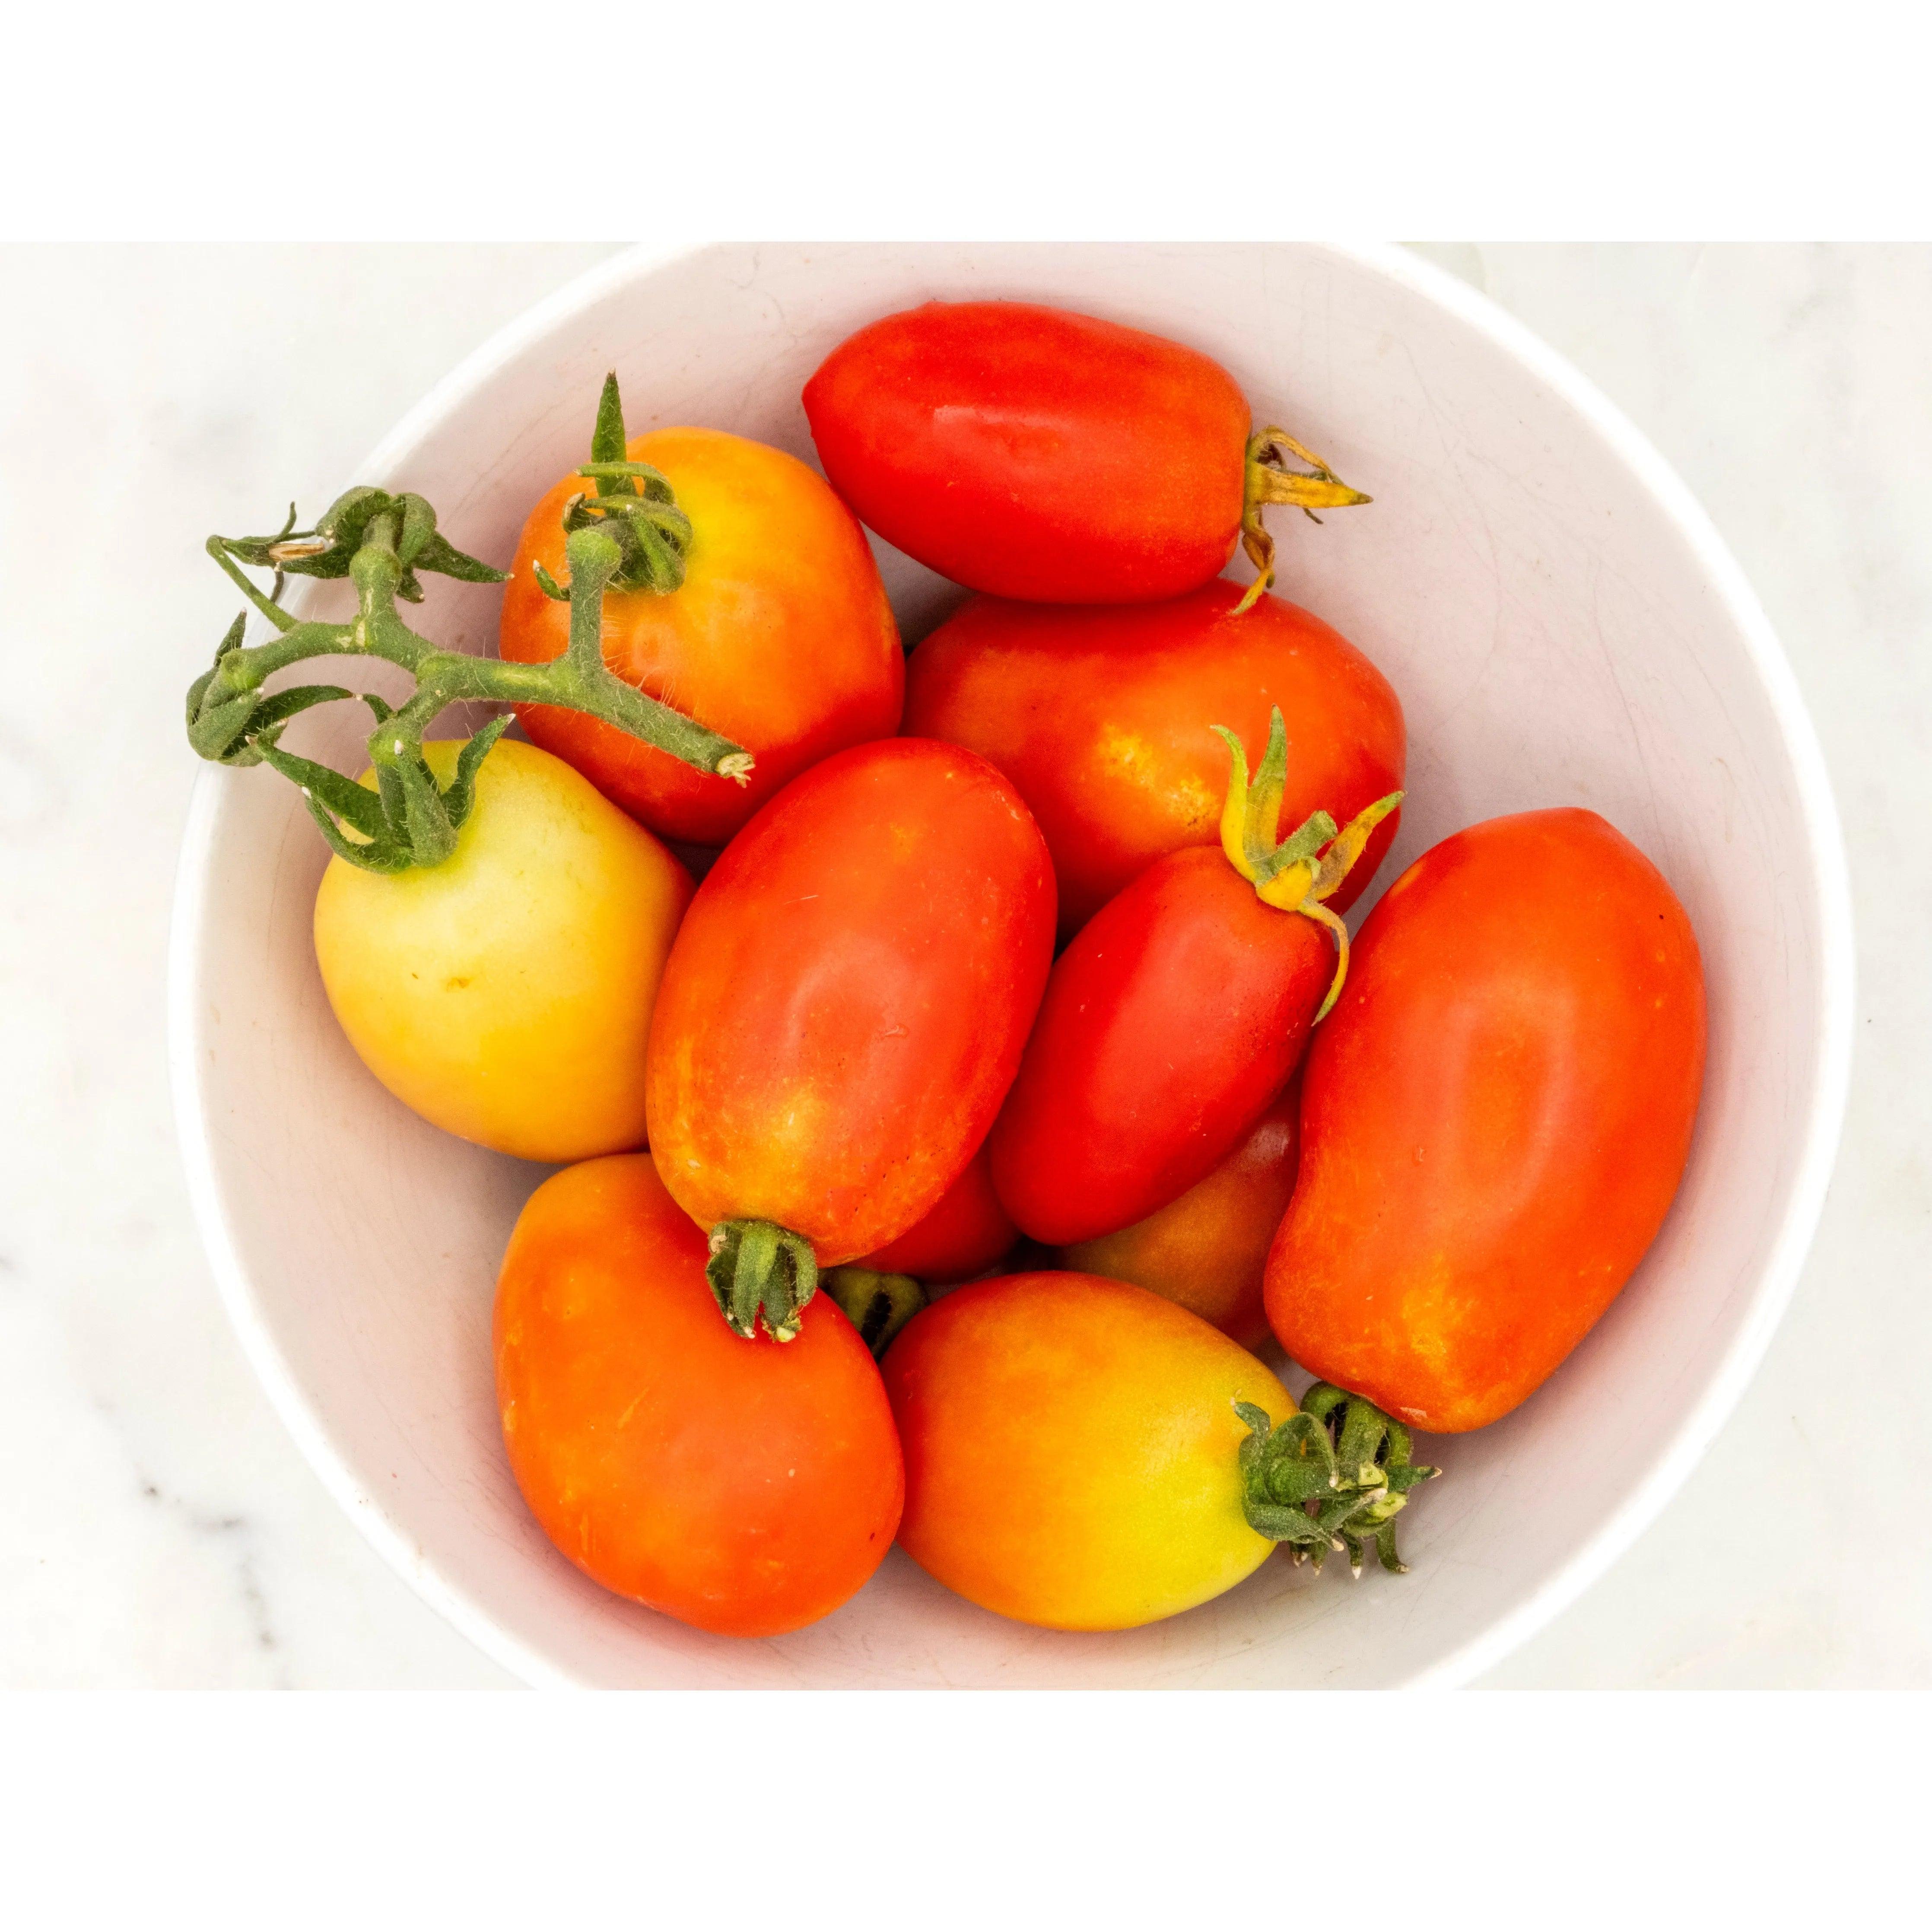 Soil-Grown Tomato Roma - Nutrient Farm